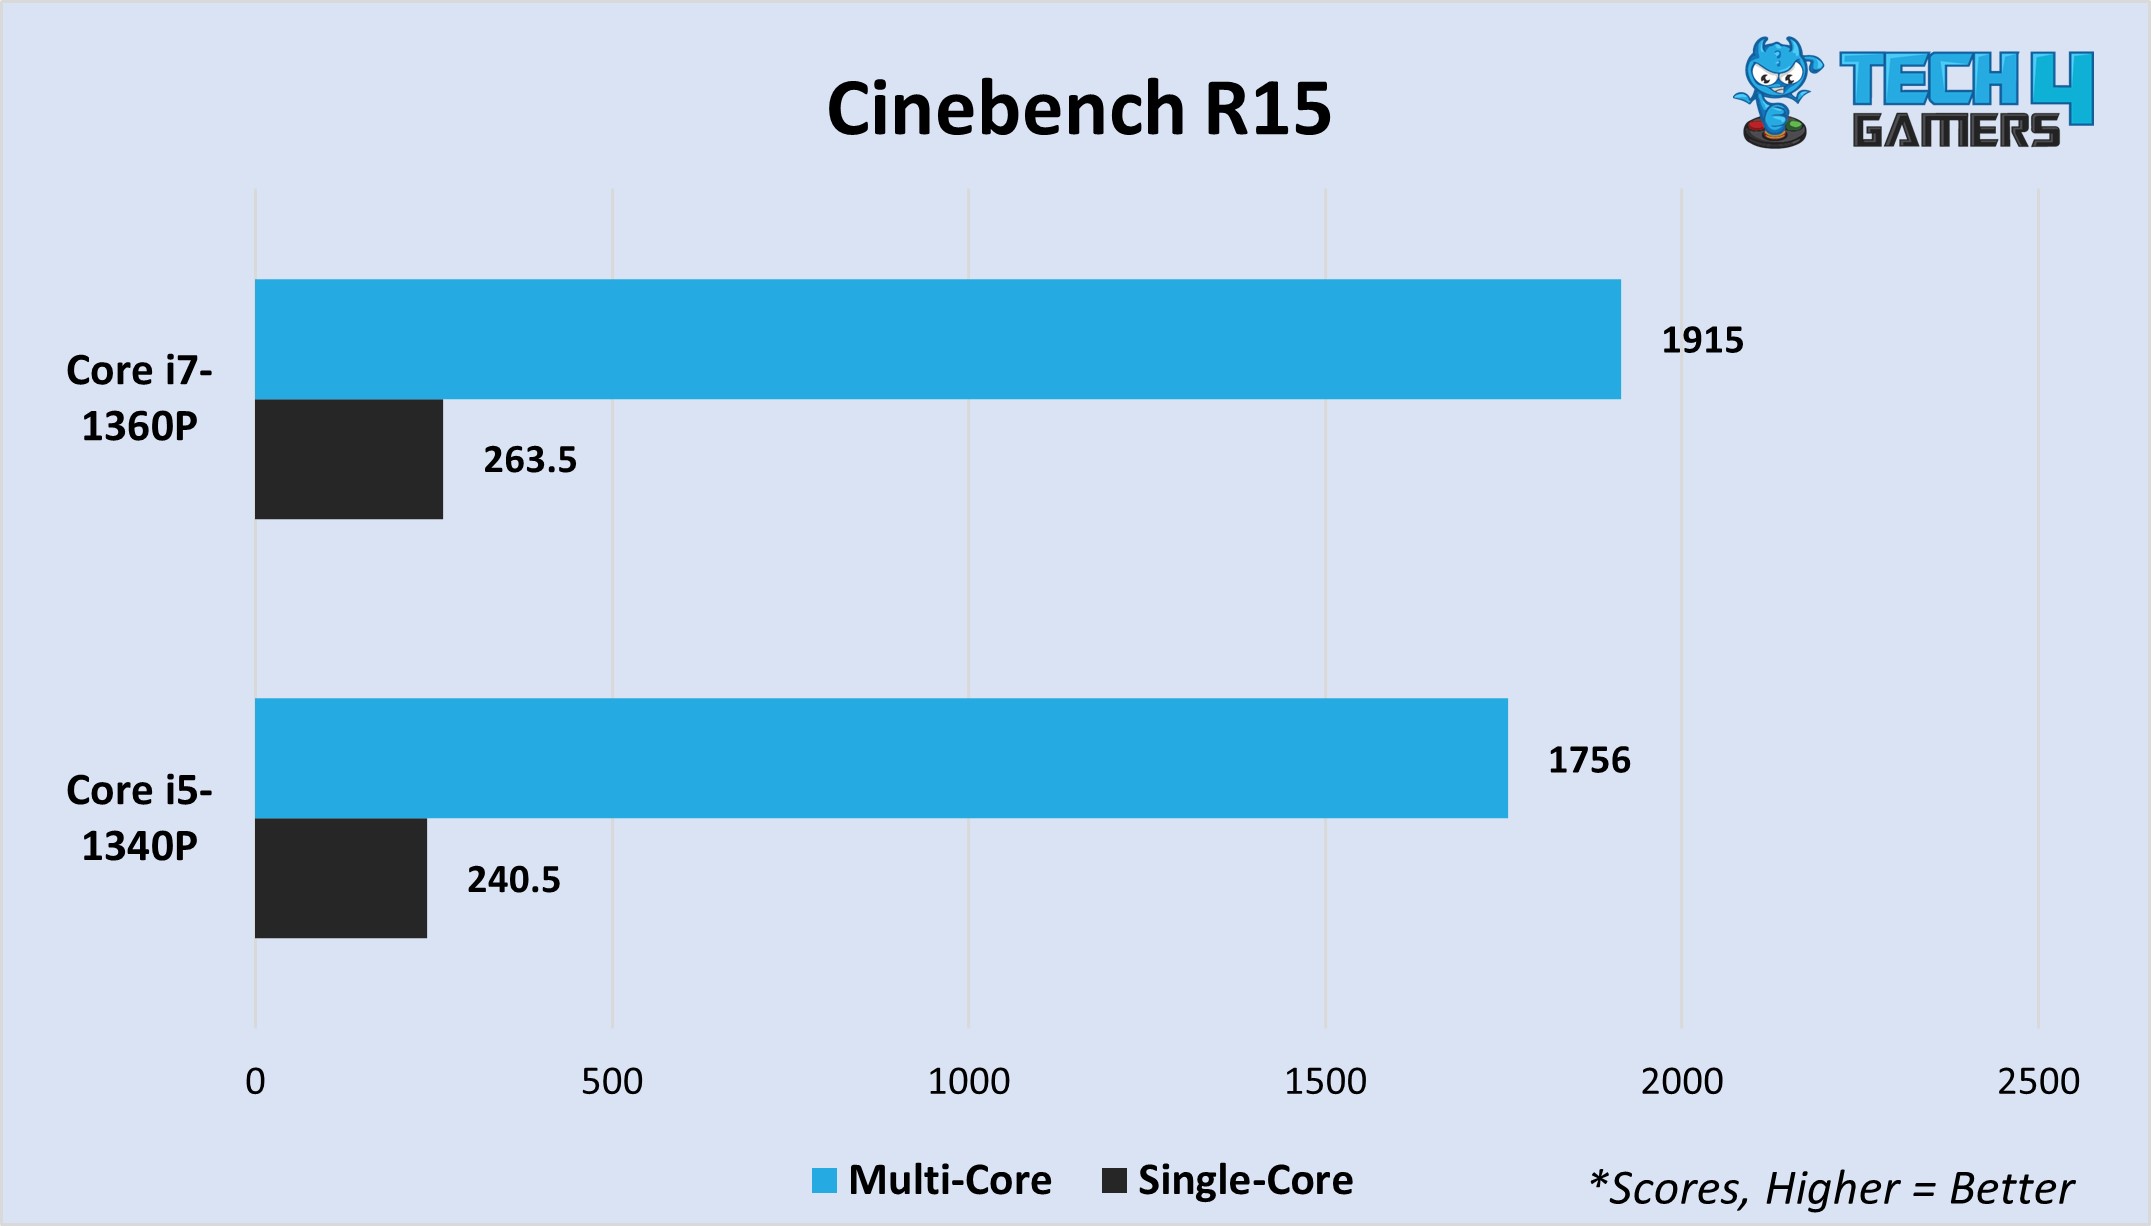 Cinebench R15 multi-core and single-core